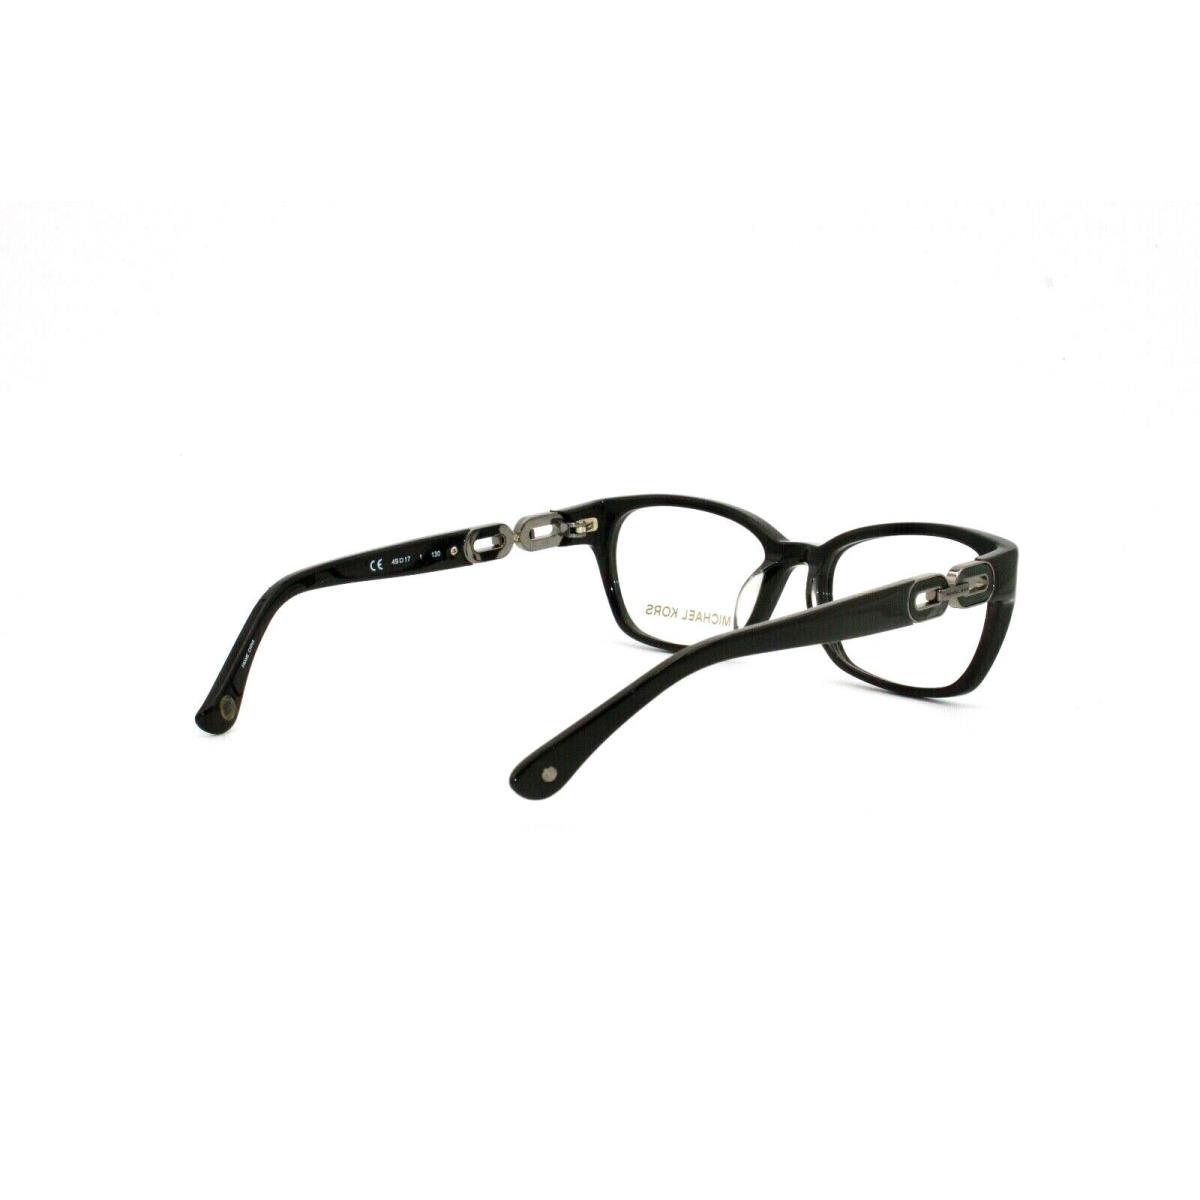 Michael Kors eyeglasses  - Black , Black Frame 2